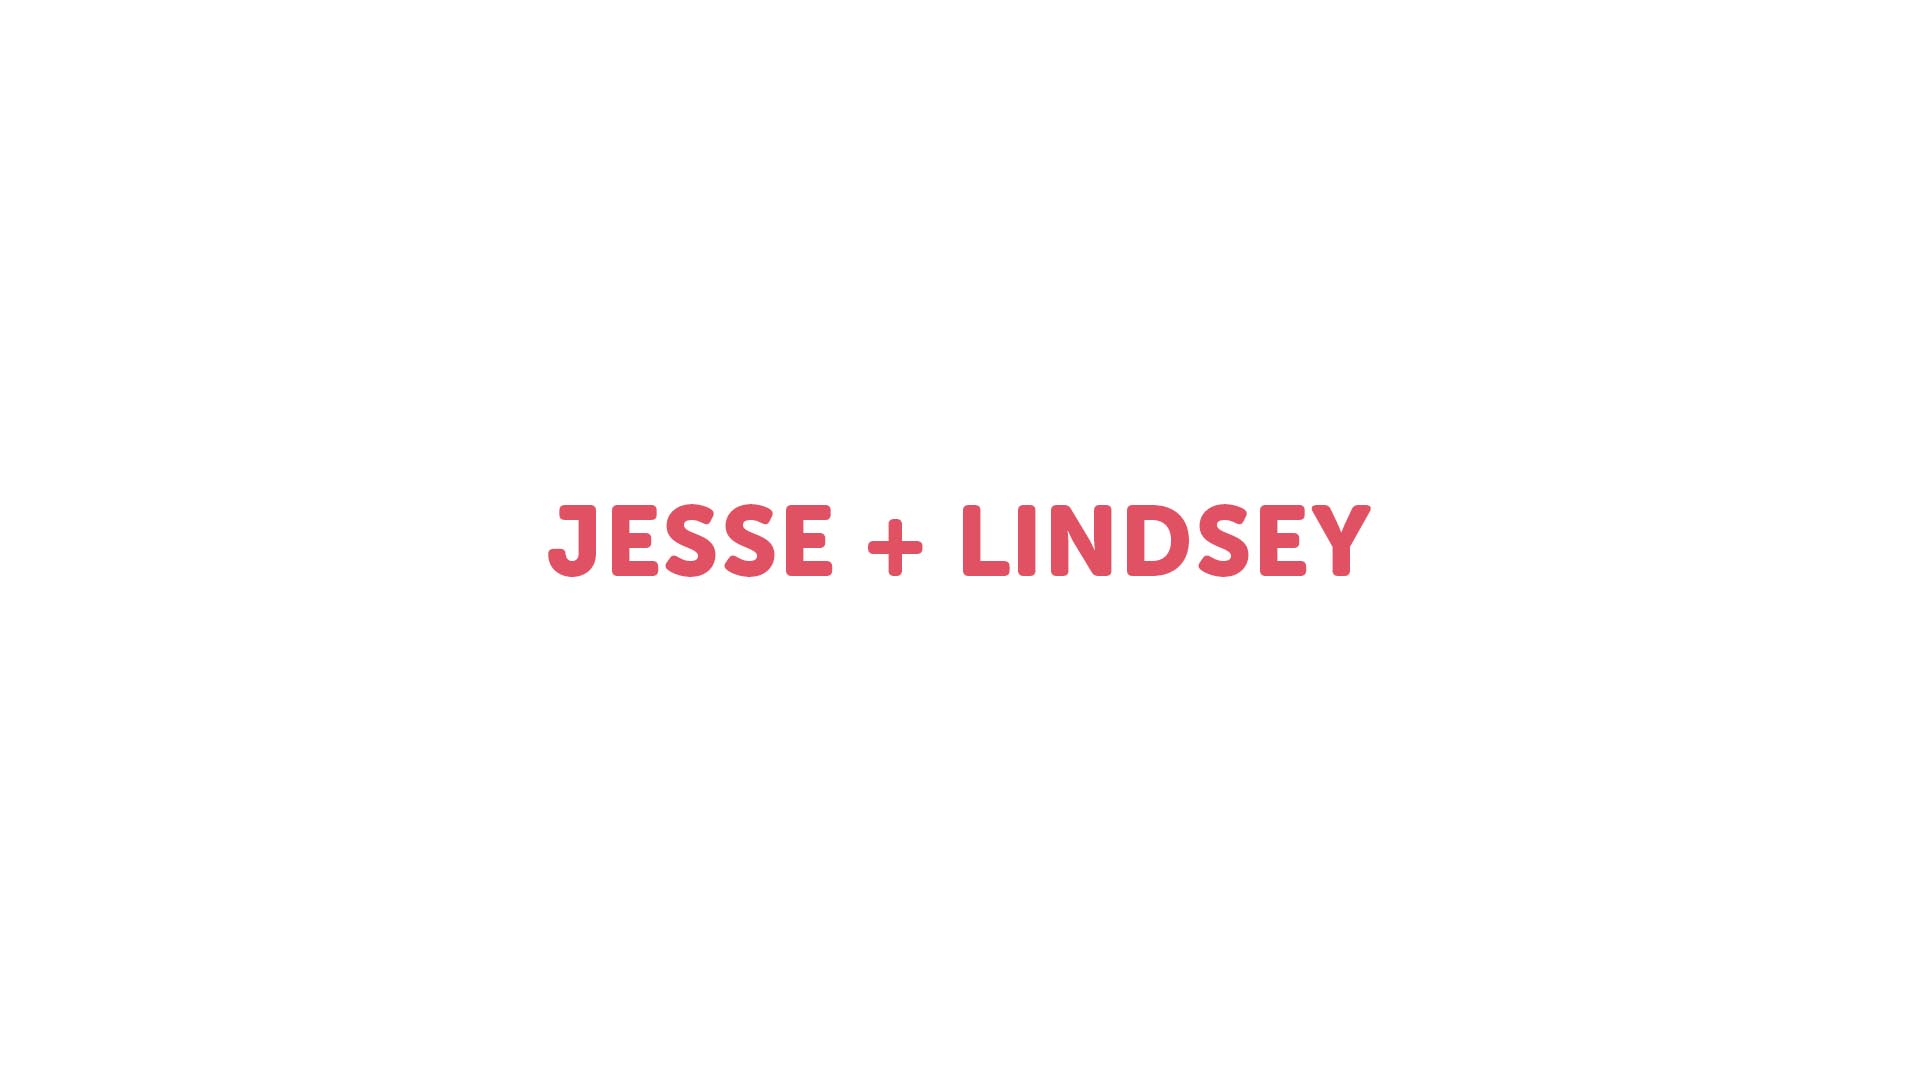 Jesse + Lindsey